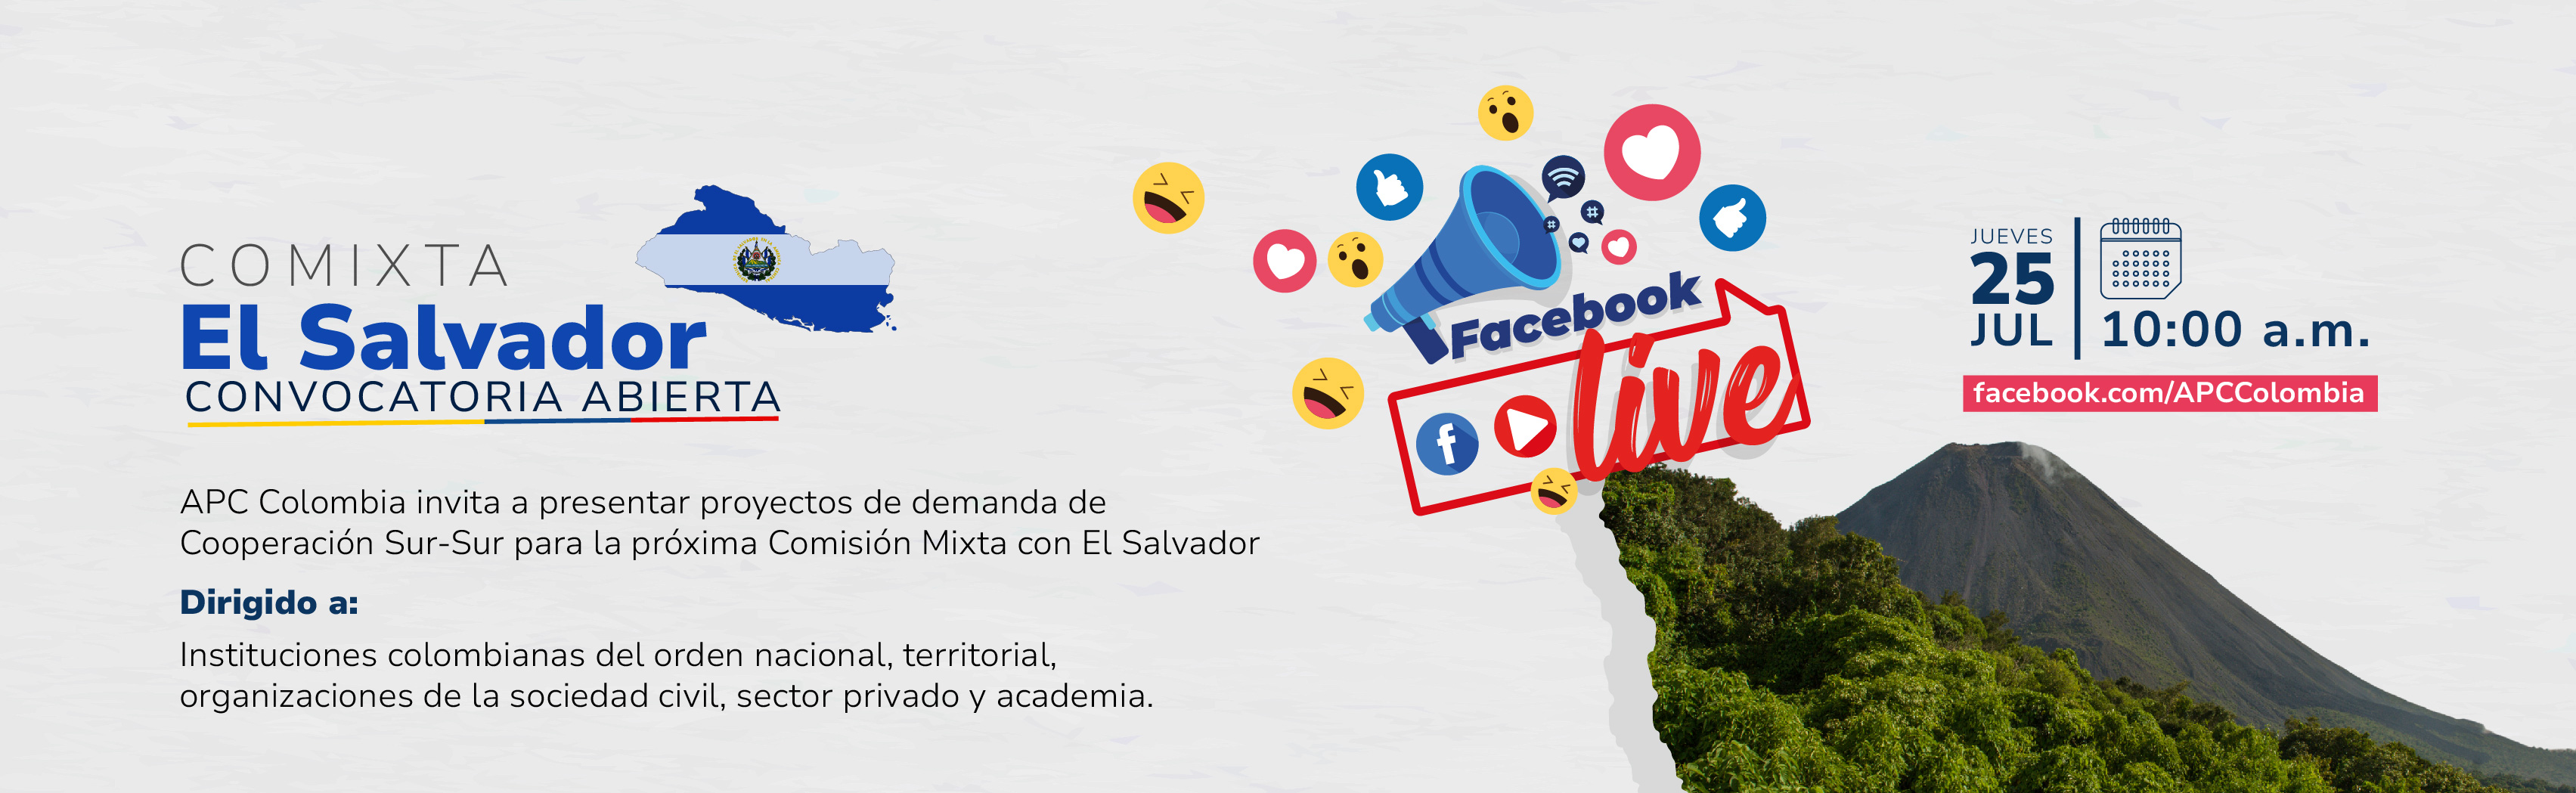 Facebook Live Convocatoria para presentar proyectos de demanda en la Comixta entre Colombia y El Salvador Facebook Live el 25 de juliop a las diez de la mañana